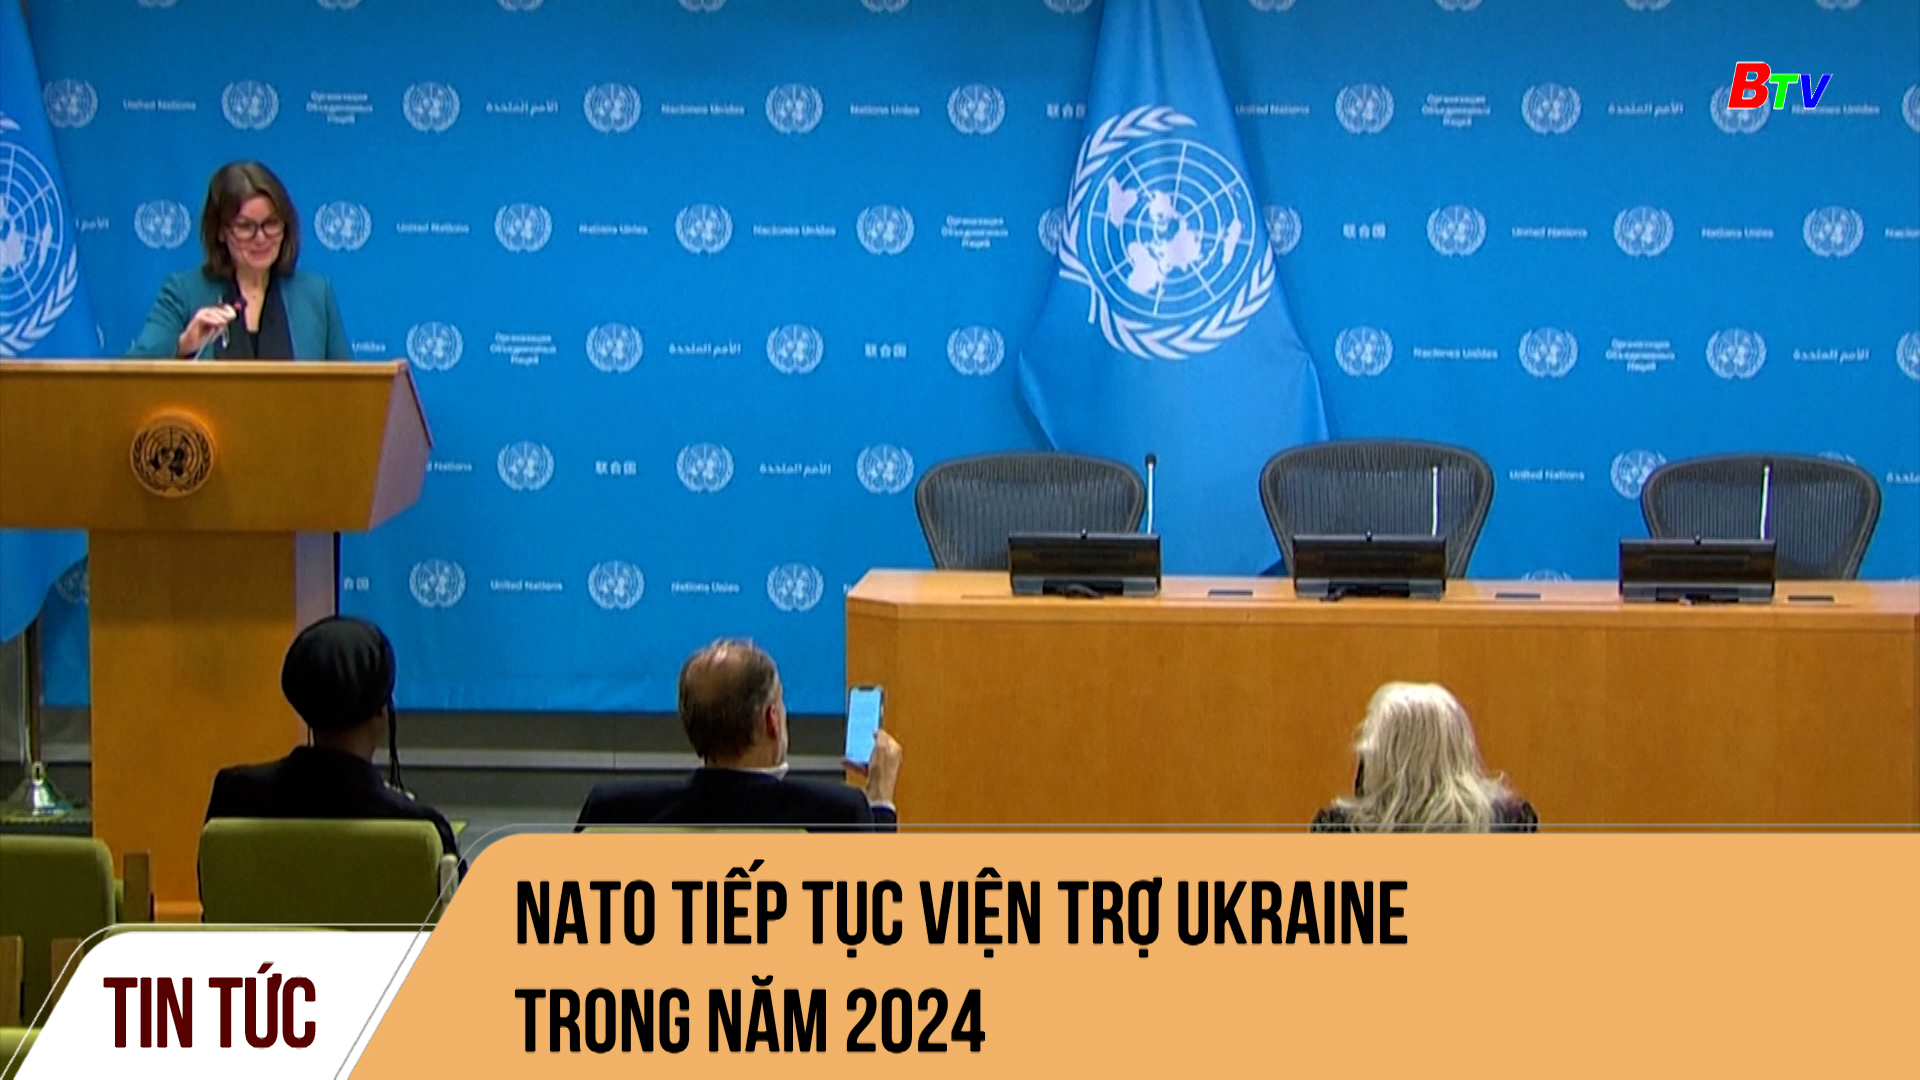 NATO tiếp tục viện trợ Ukraine trong năm 2024